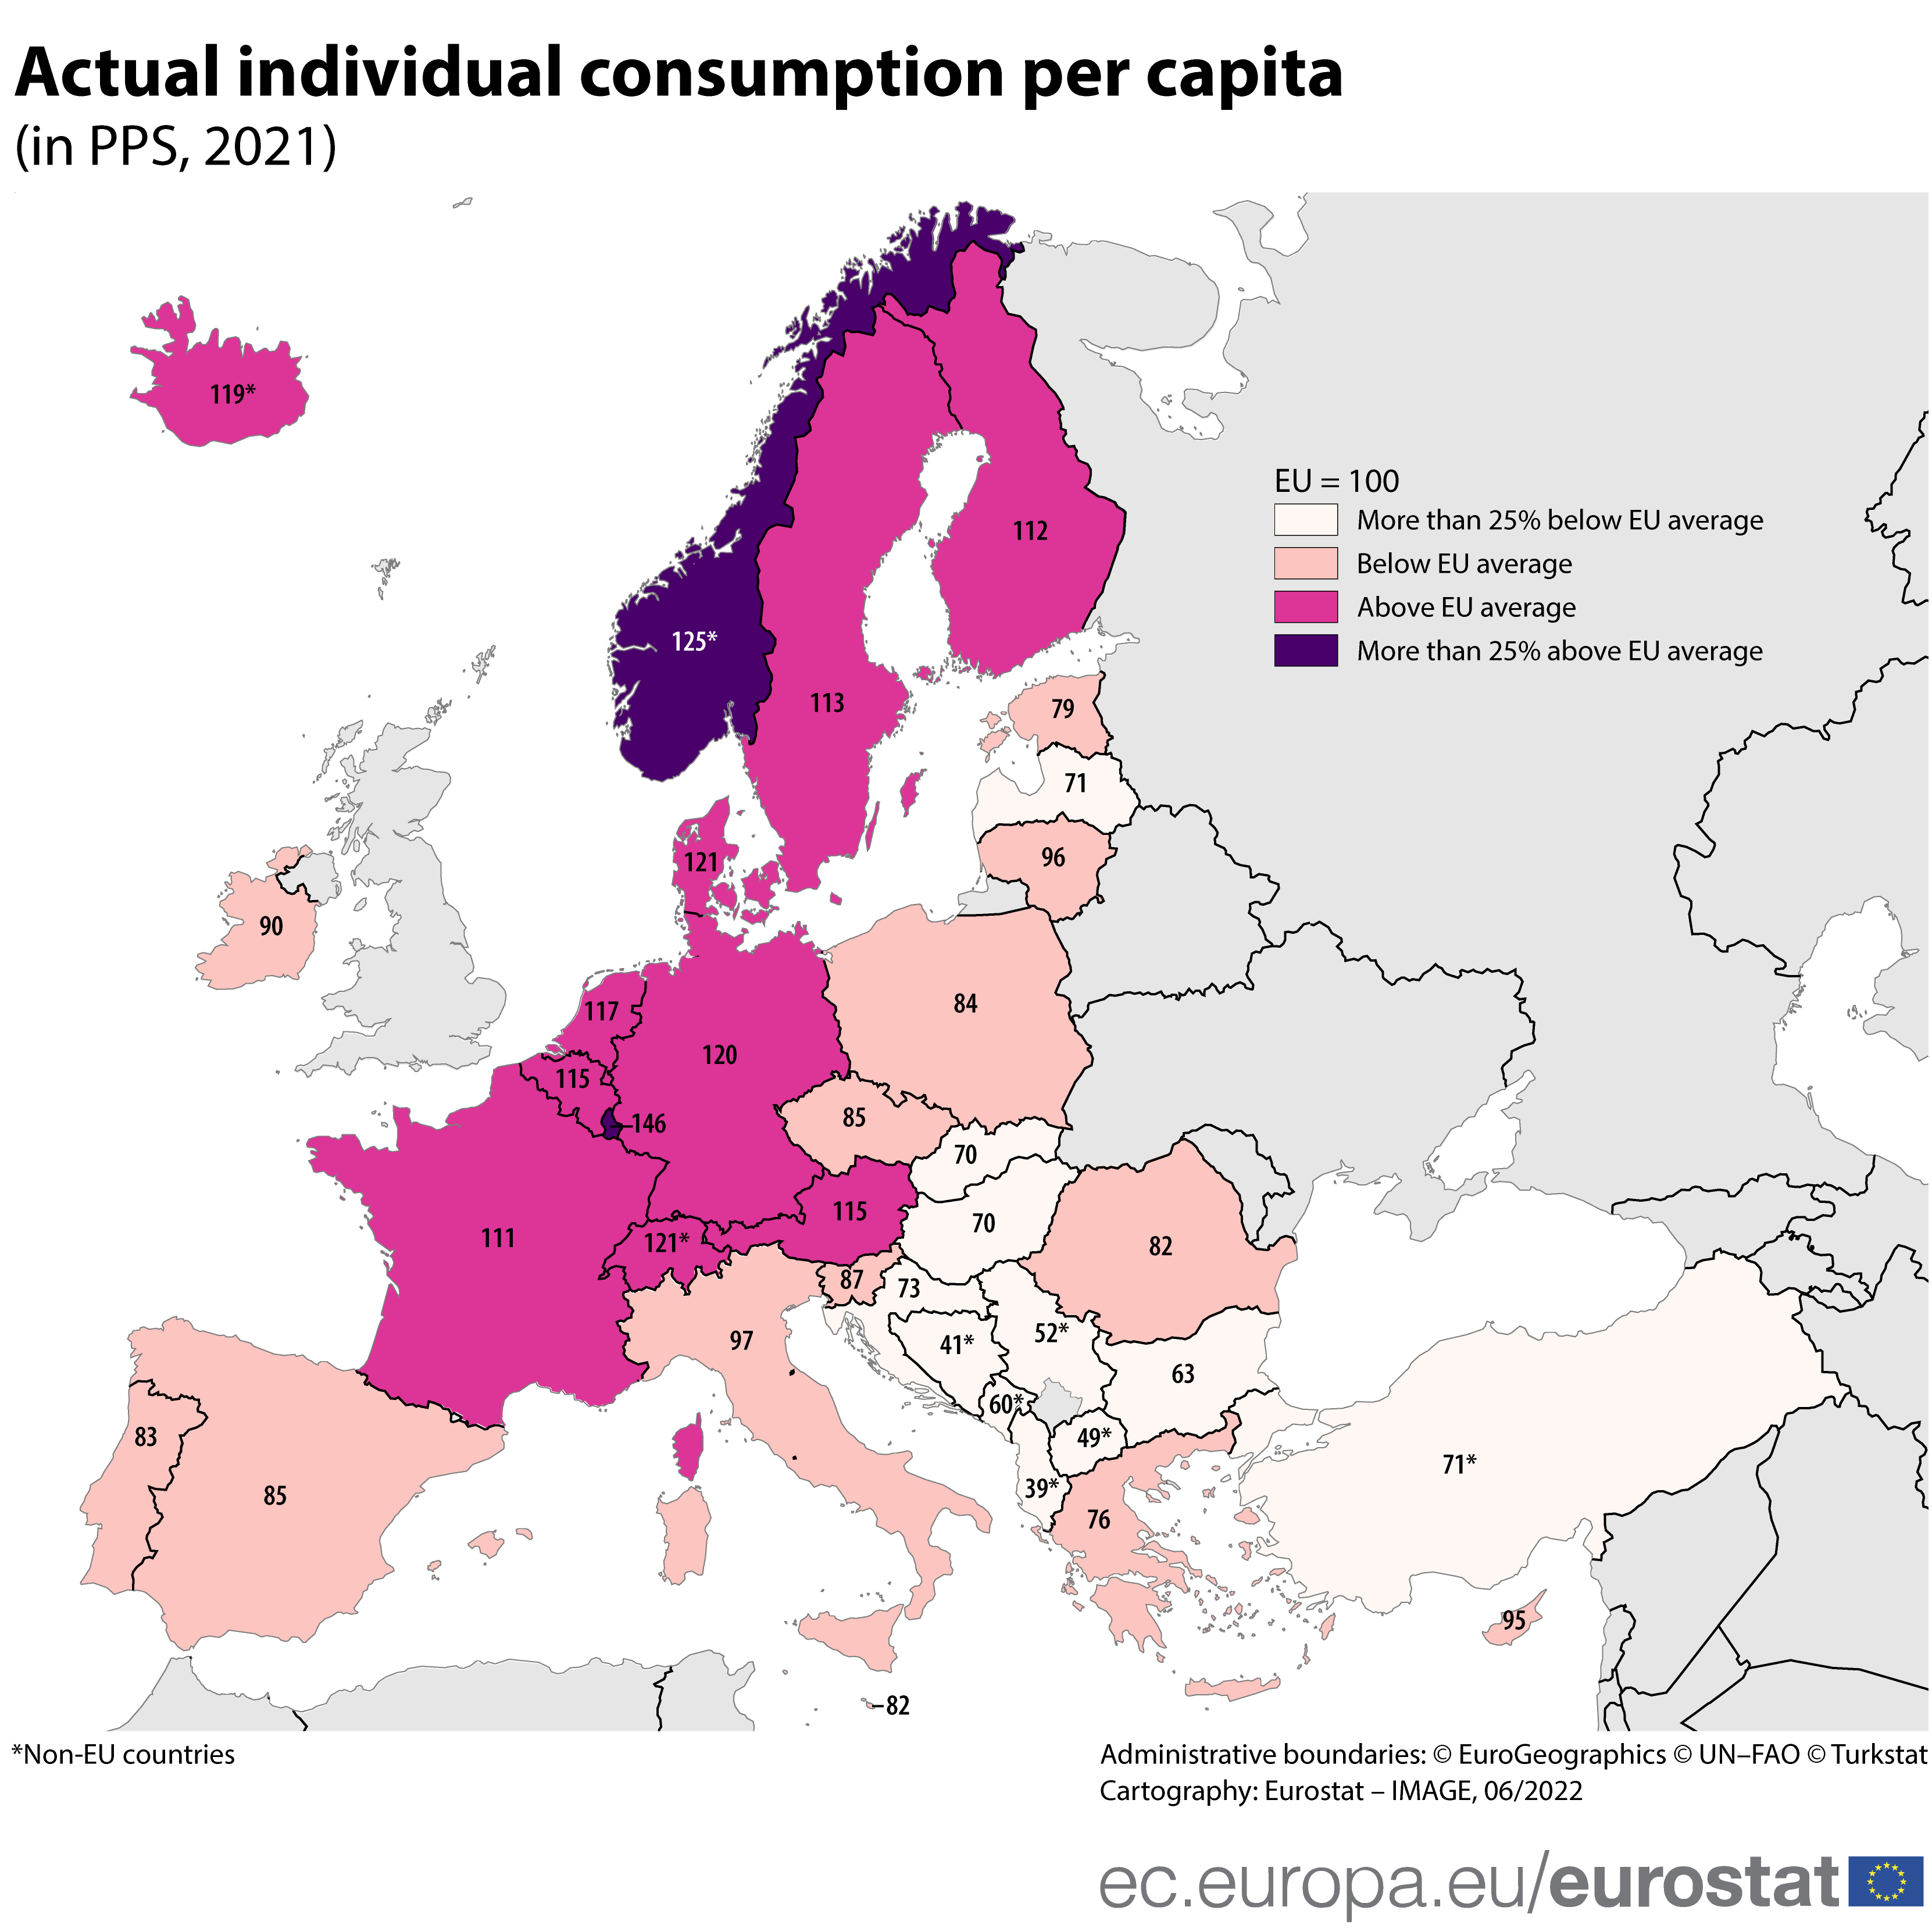 Χάρτης: Πραγματική κατά κεφαλήν ατομική κατανάλωση σε PPs, 2021, στην ΕΕ, την ΕΖΕΣ και τρίτες χώρες